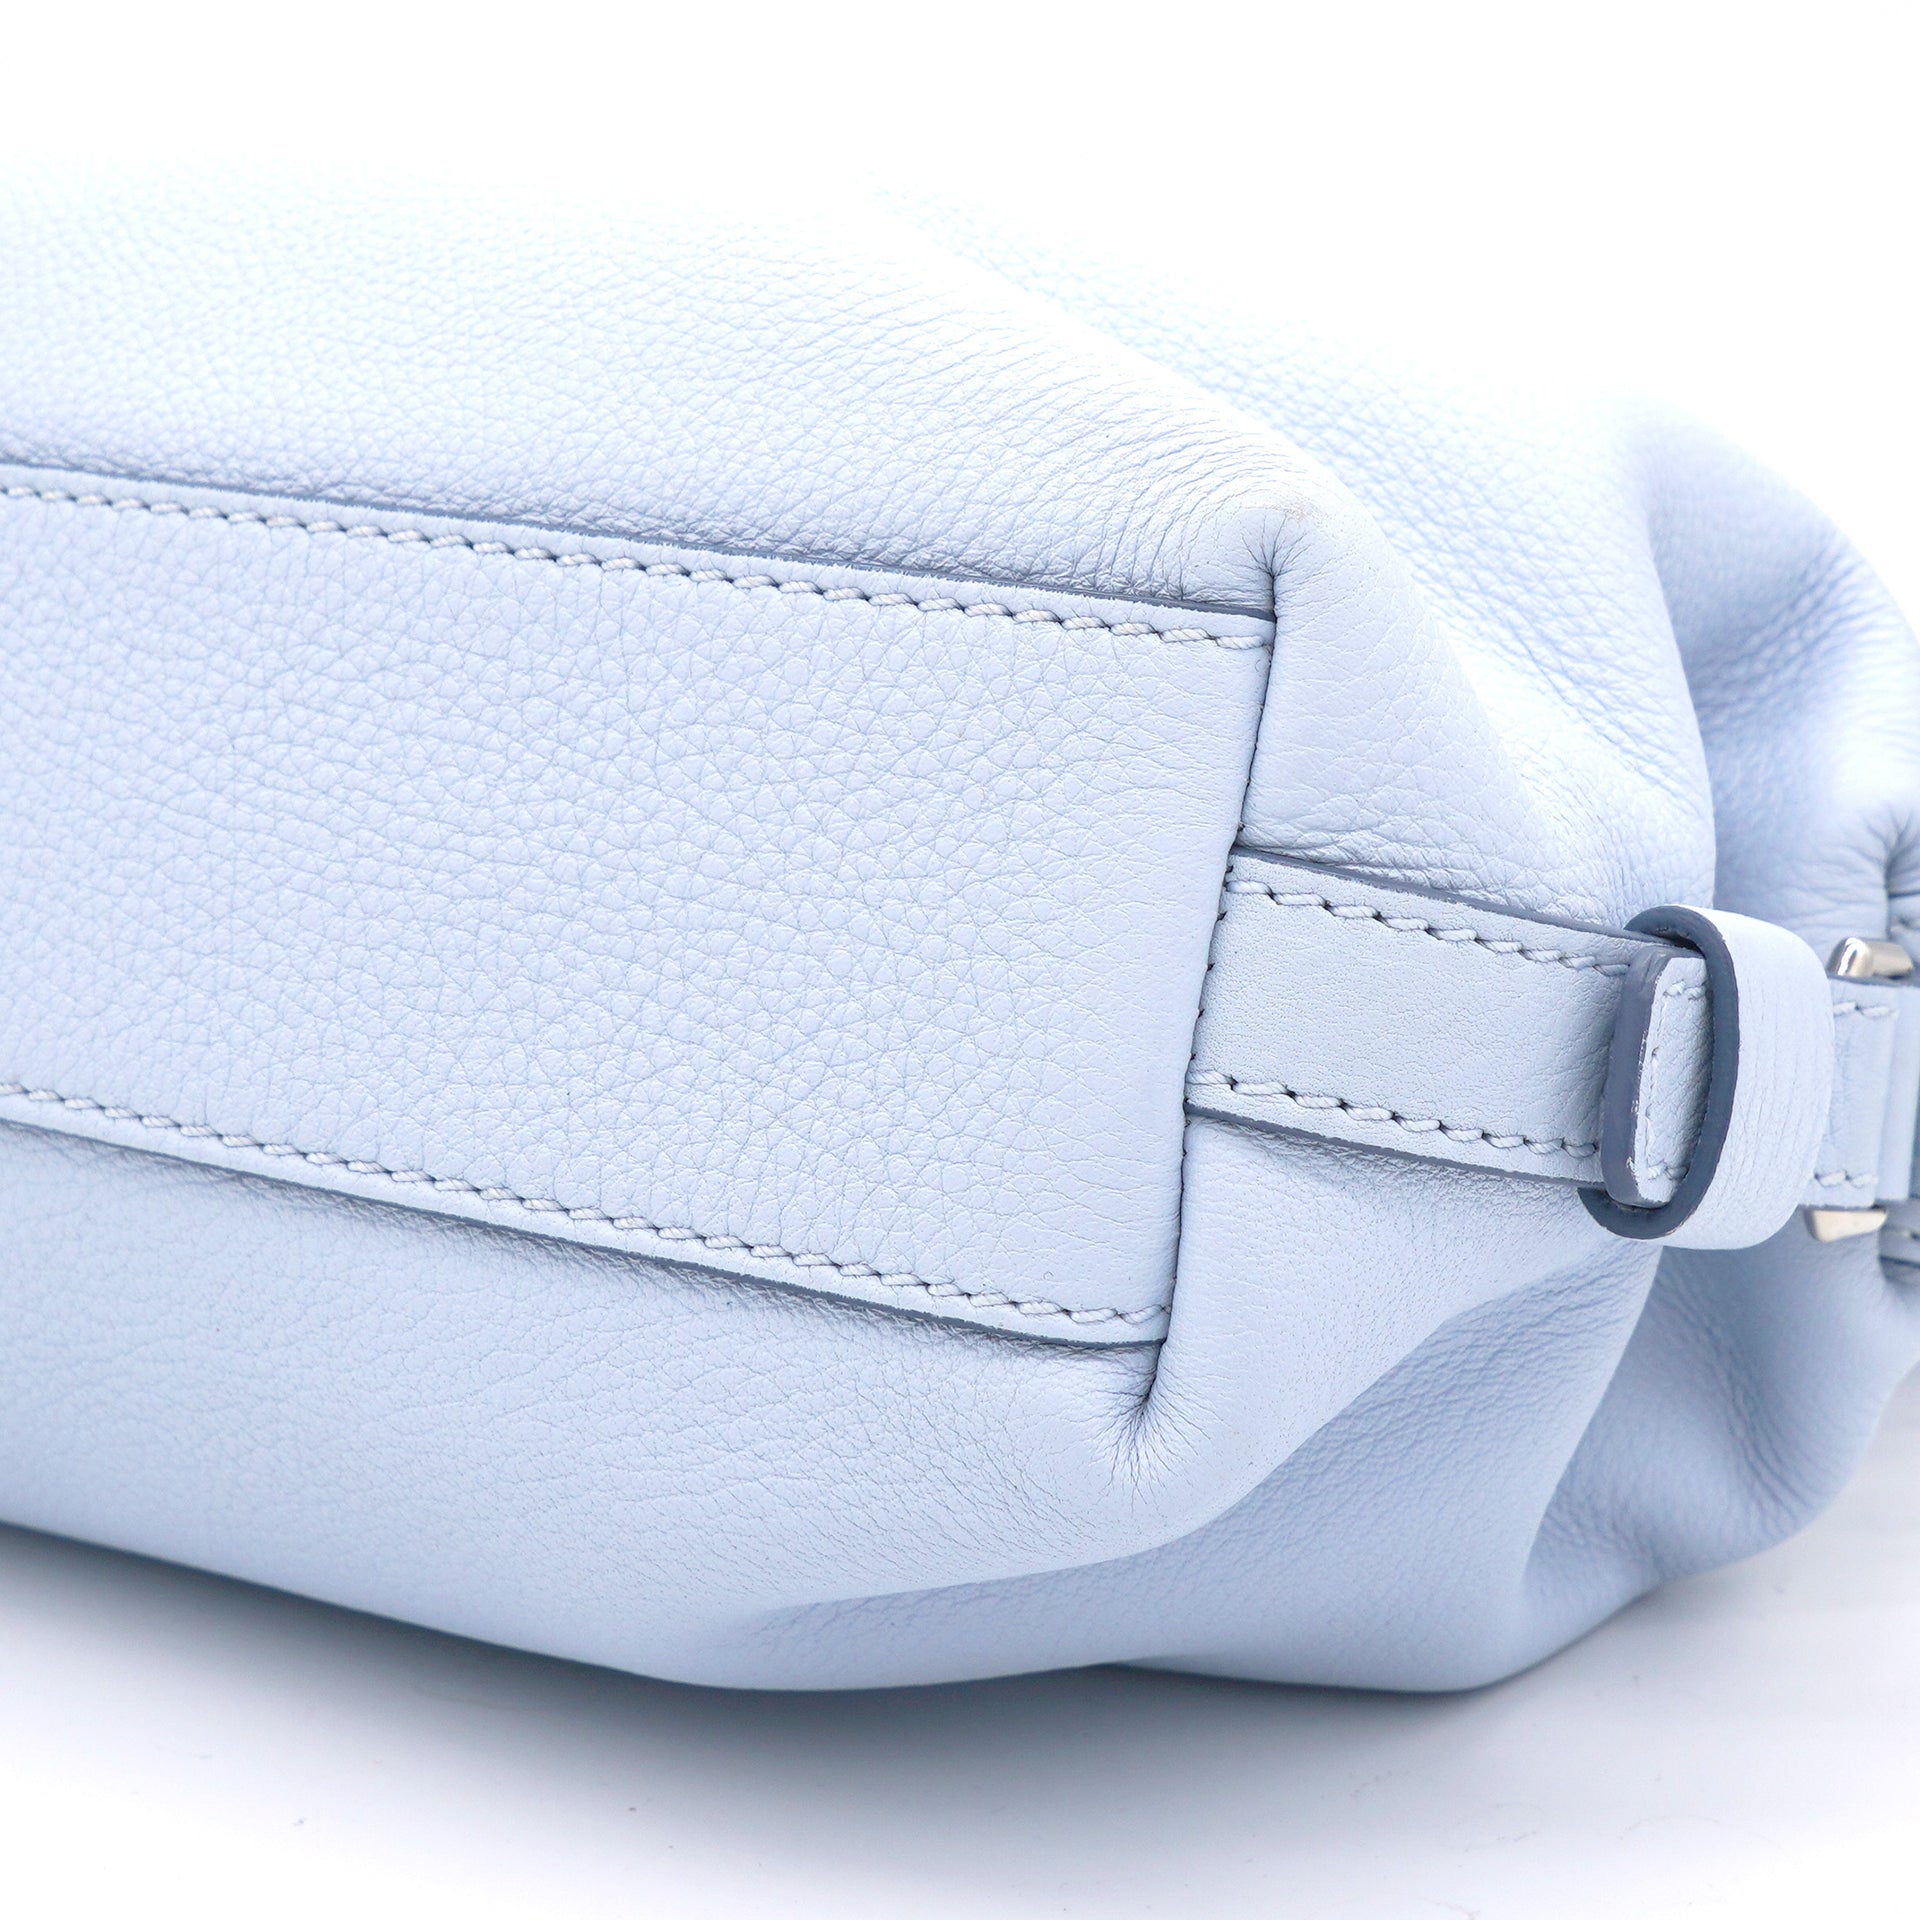 Light Blue Leather Mini Nightingale Bag